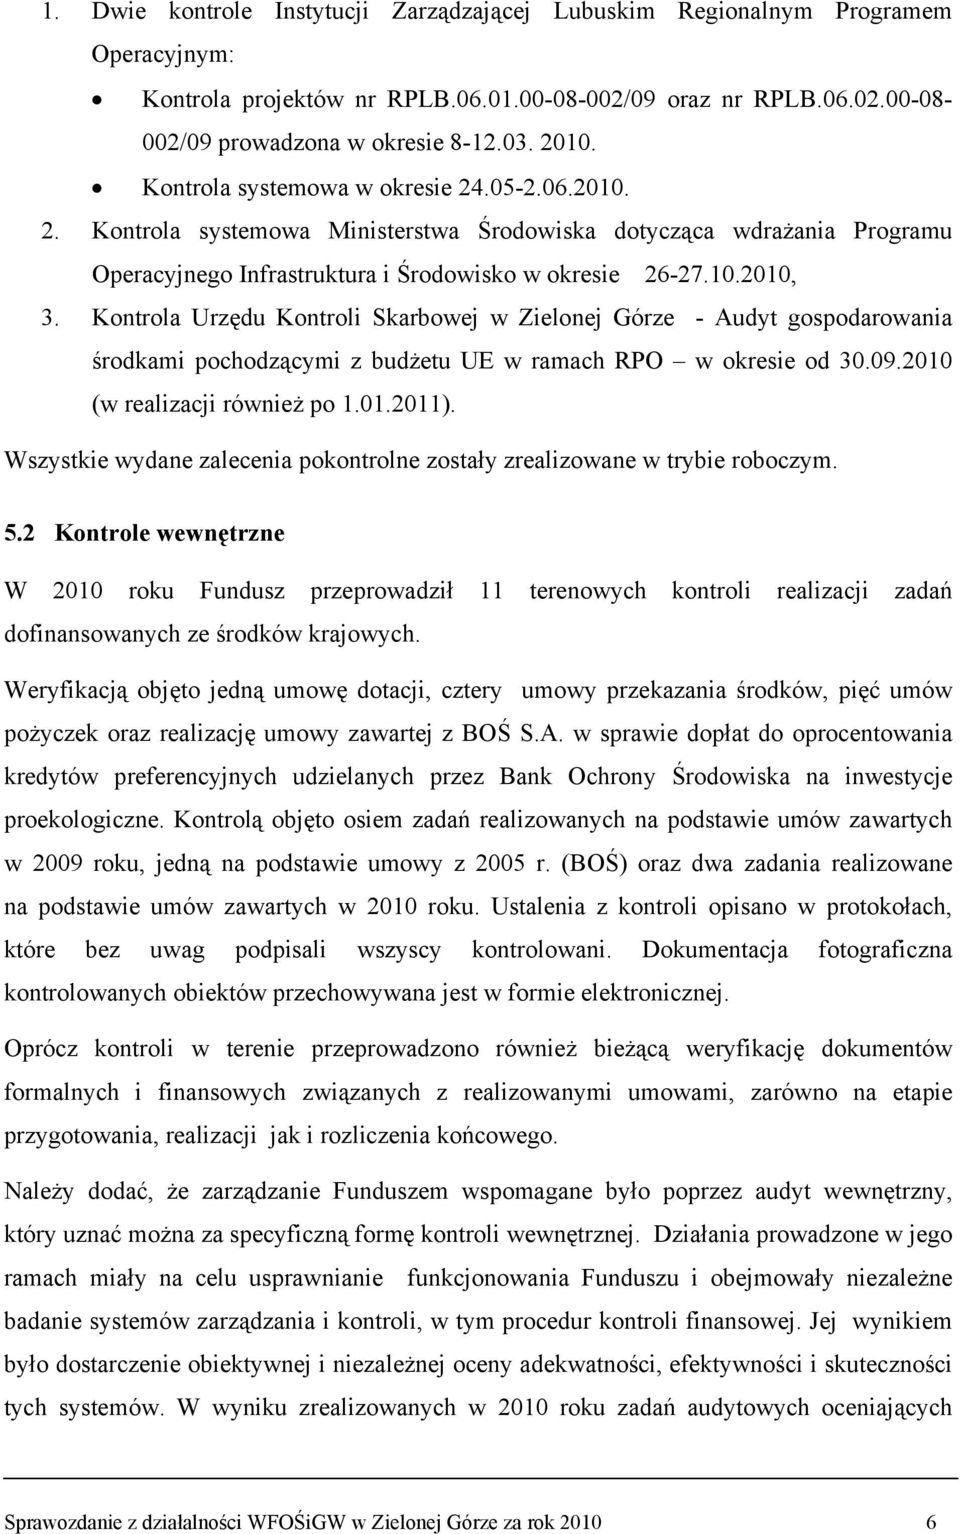 Kontrola Urzędu Kontroli Skarbowej w Zielonej Górze - Audyt gospodarowania środkami pochodzącymi z budżetu UE w ramach RPO w okresie od 30.09.2010 (w realizacji również po 1.01.2011).